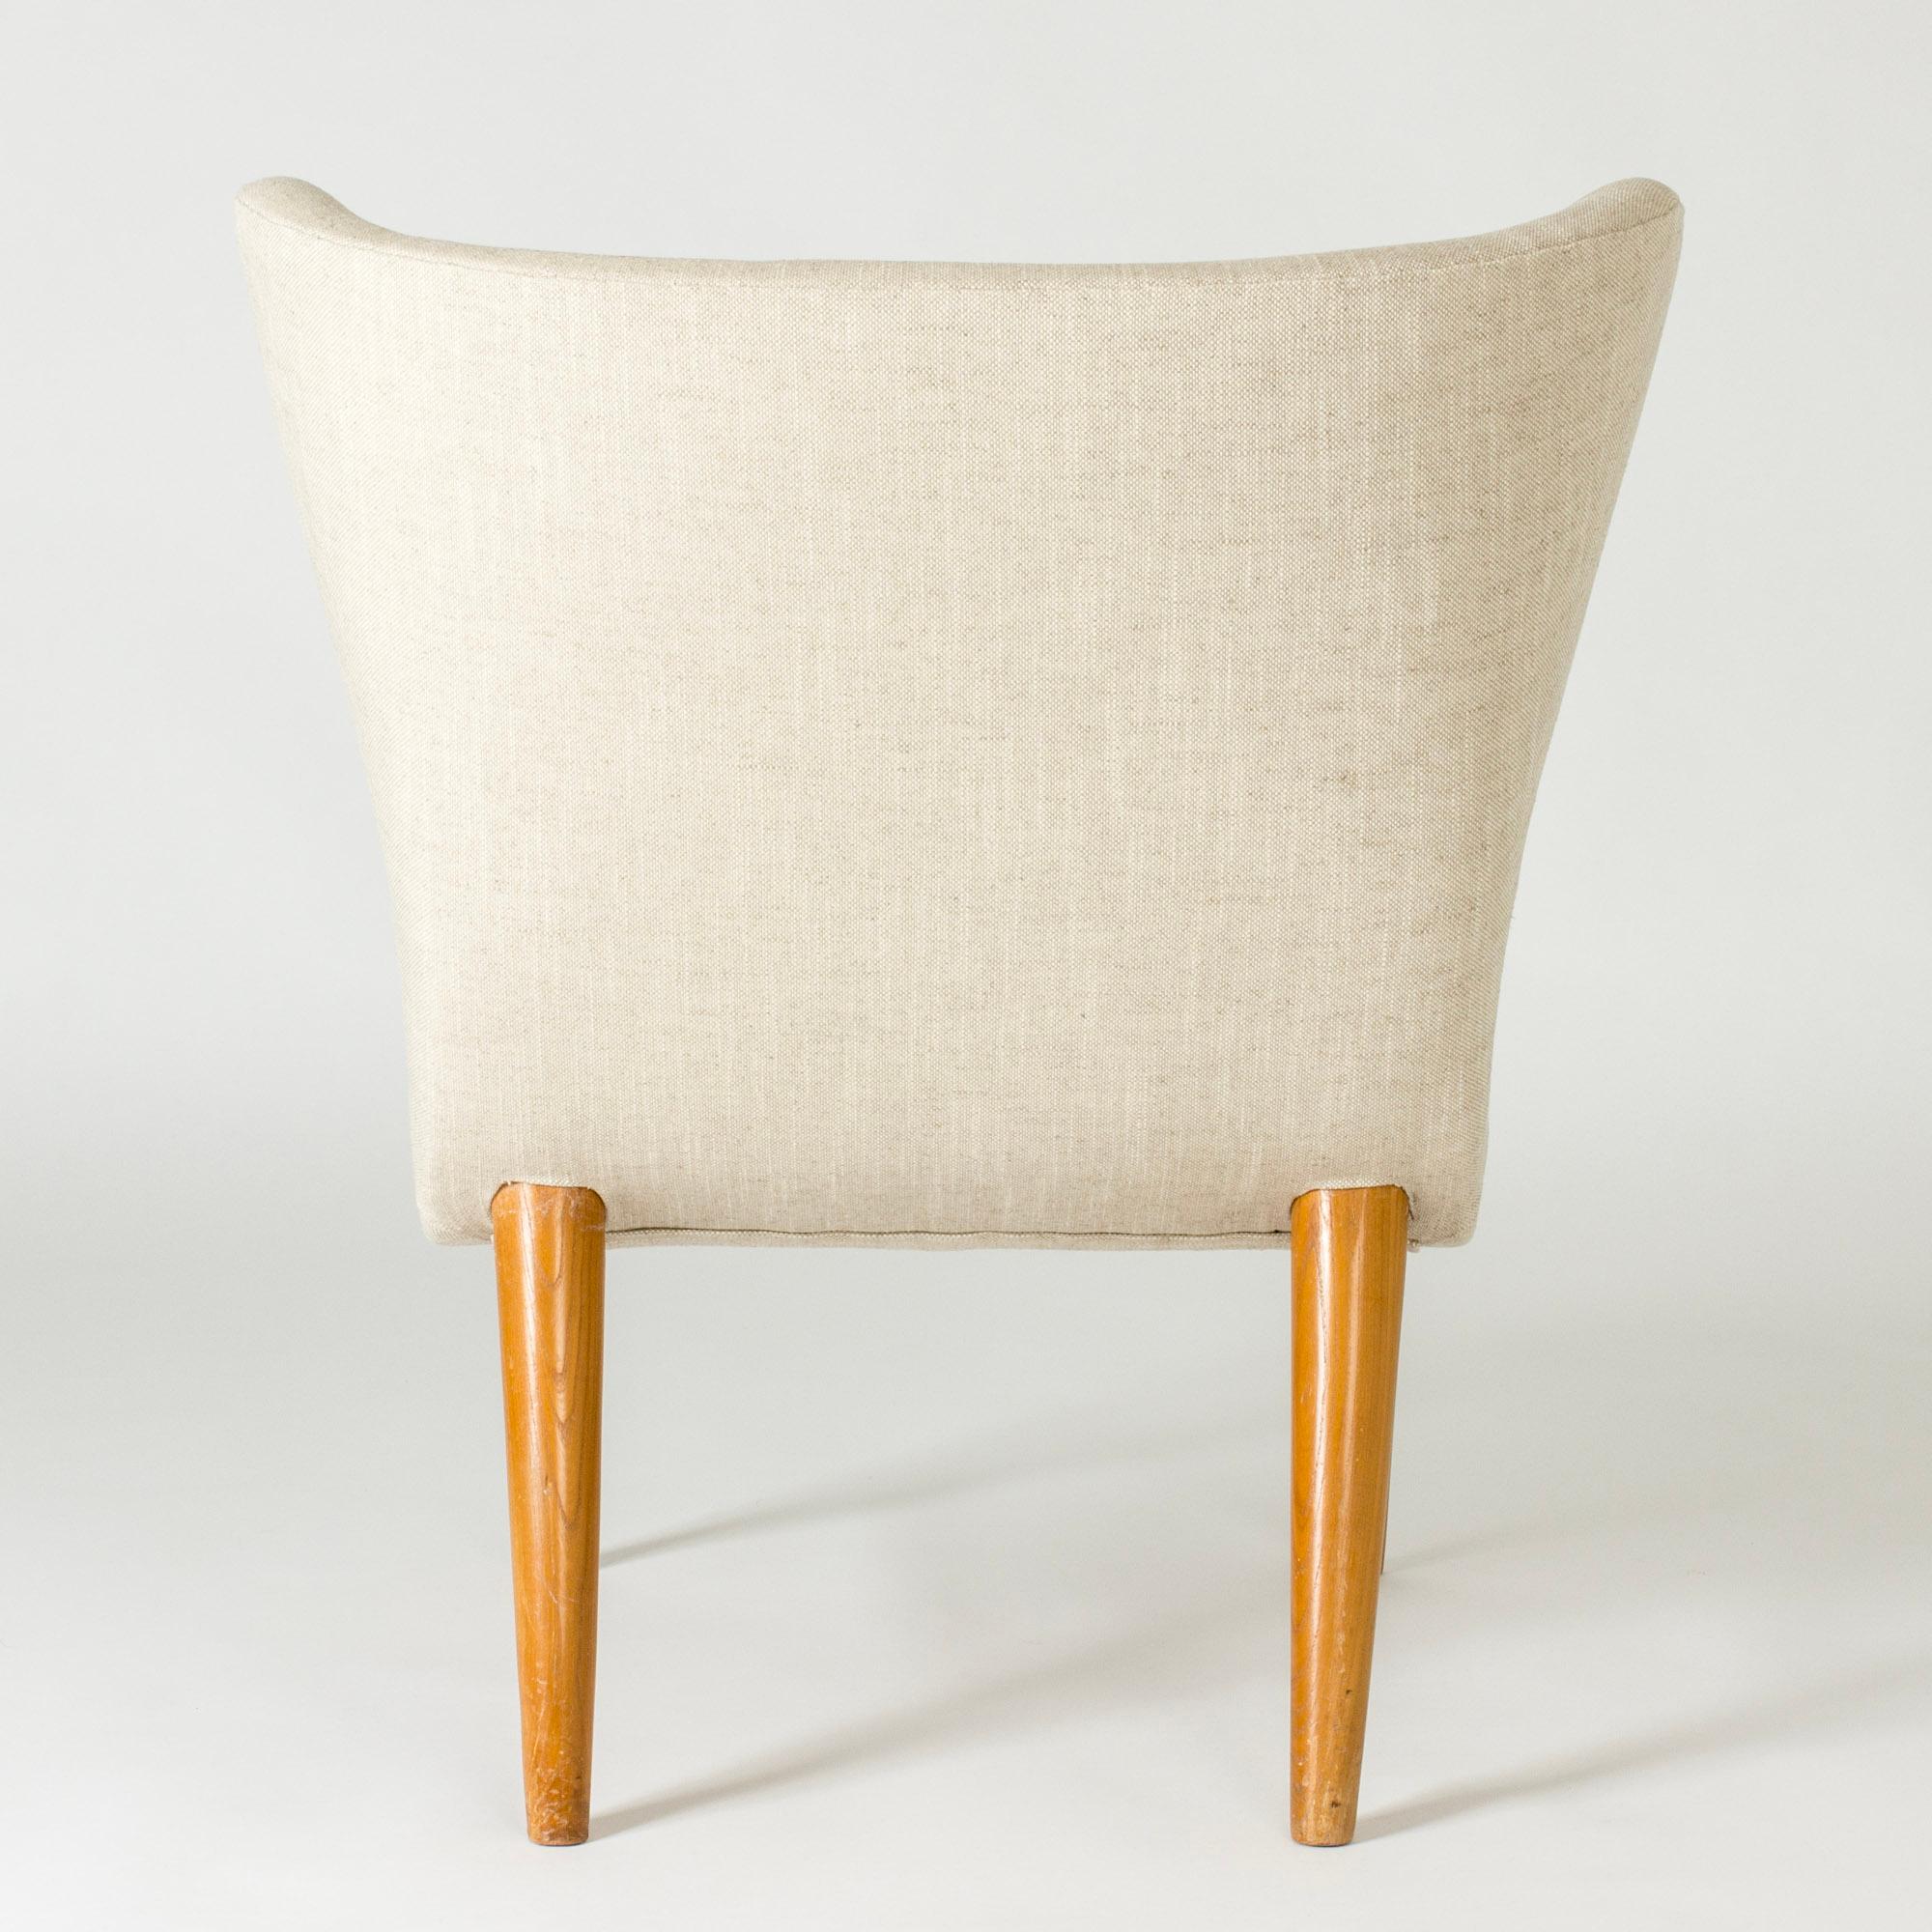 Vintage Modernist Lounge Chairs by Erik Karlén, Sweden, 1940s For Sale 1